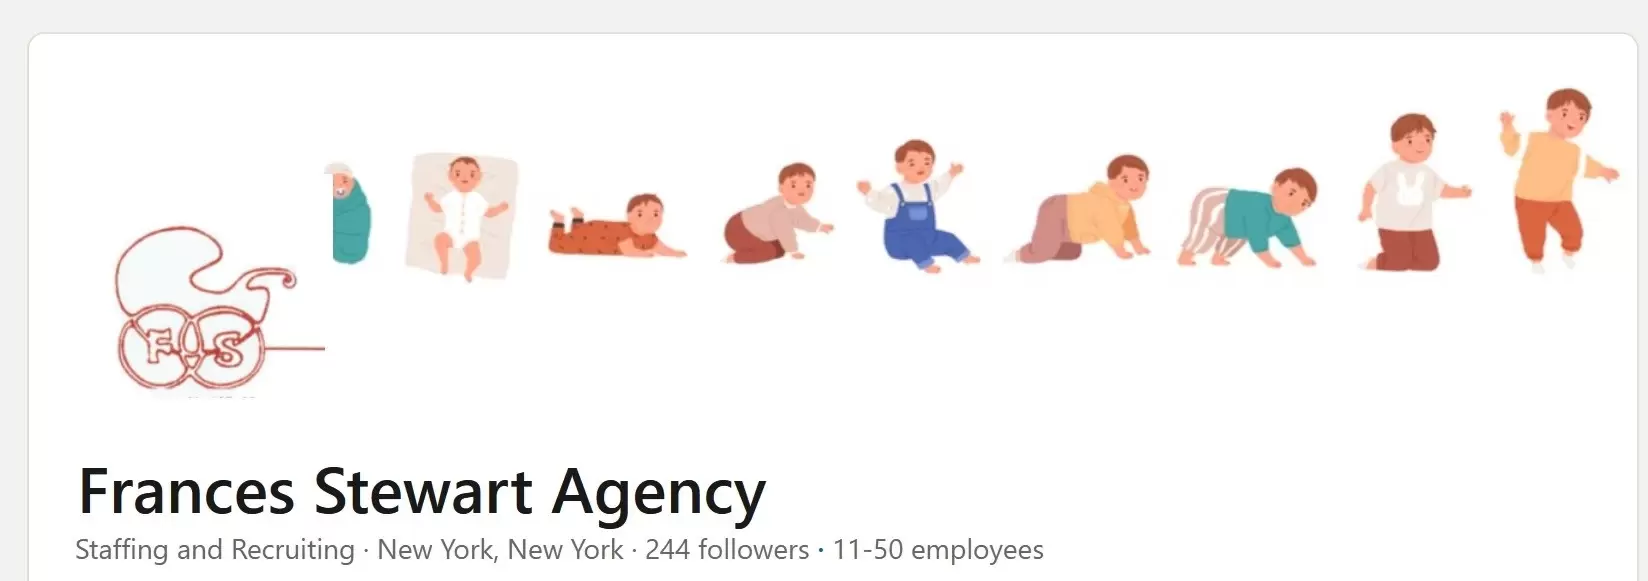 Frances Steward Agency on LinkedIn